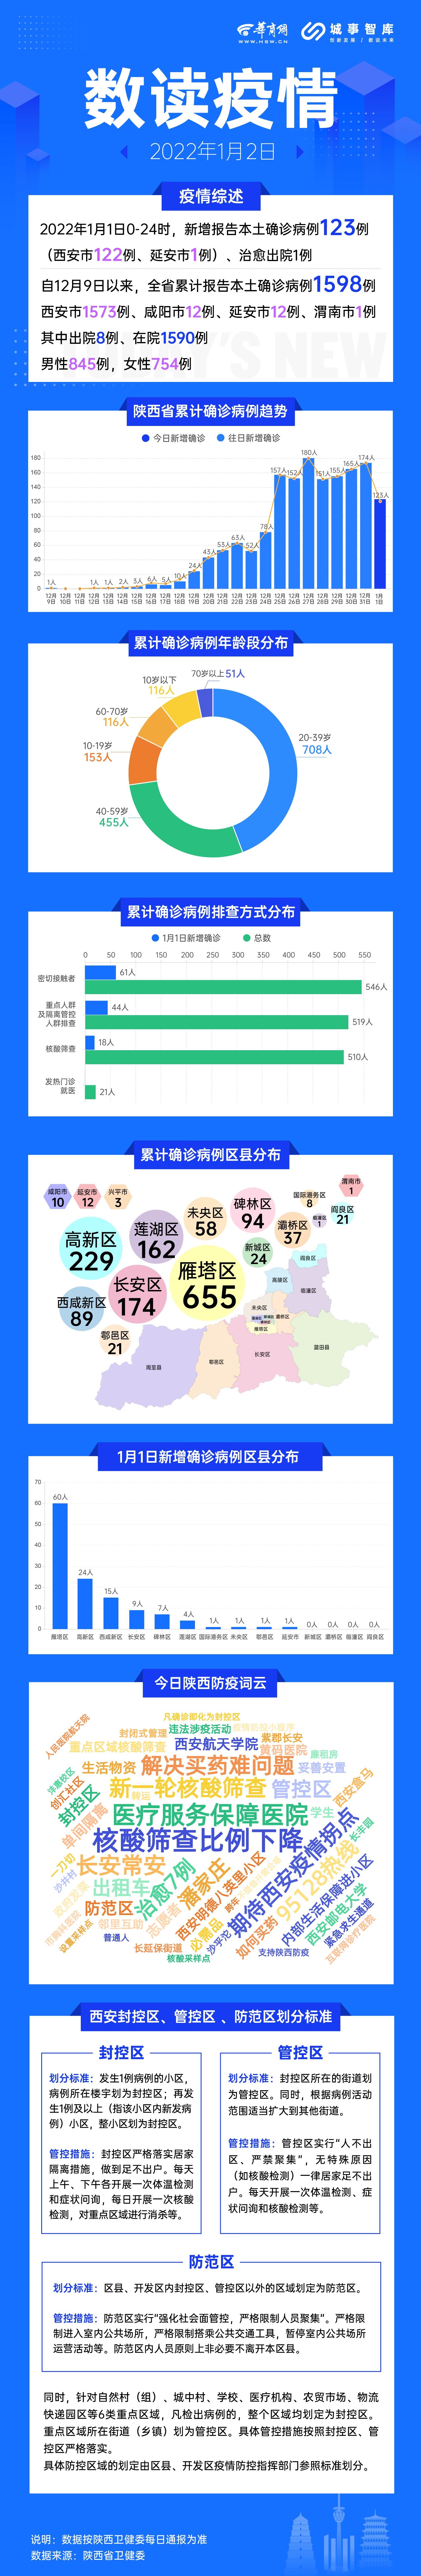 1日陕西省新增确诊病例集中在雁塔 高新 西咸新区|数读疫情| 雁塔高新